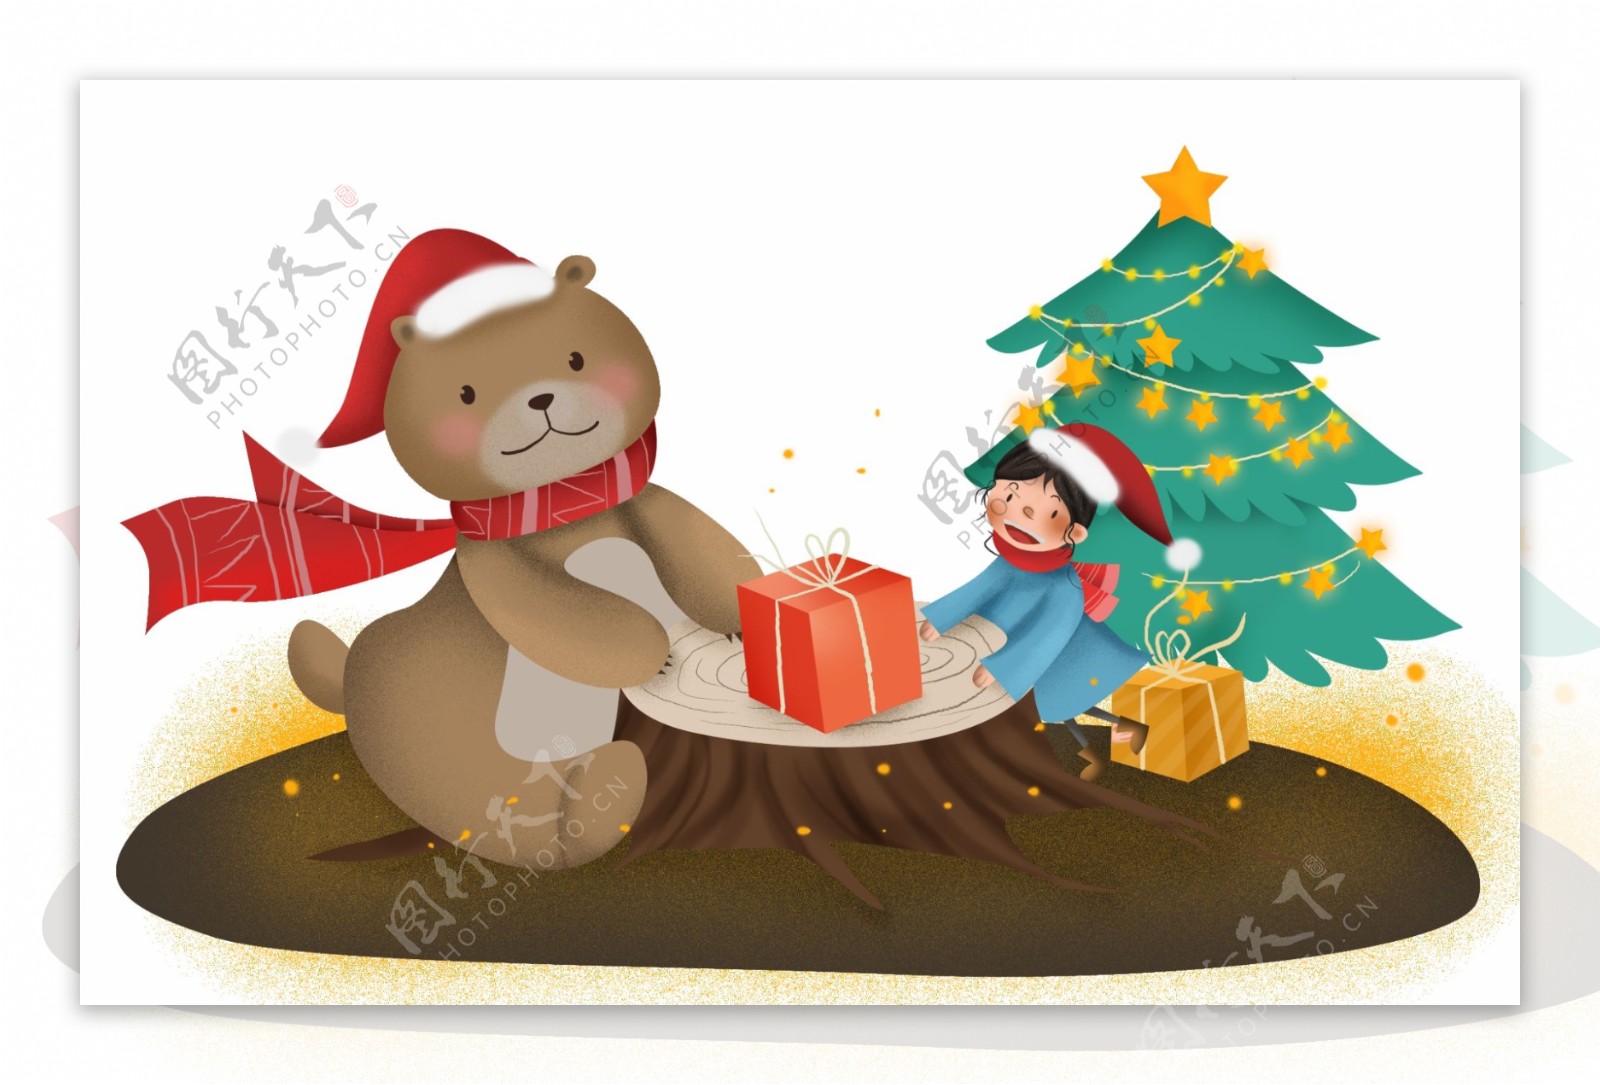 圣诞节小熊和儿童